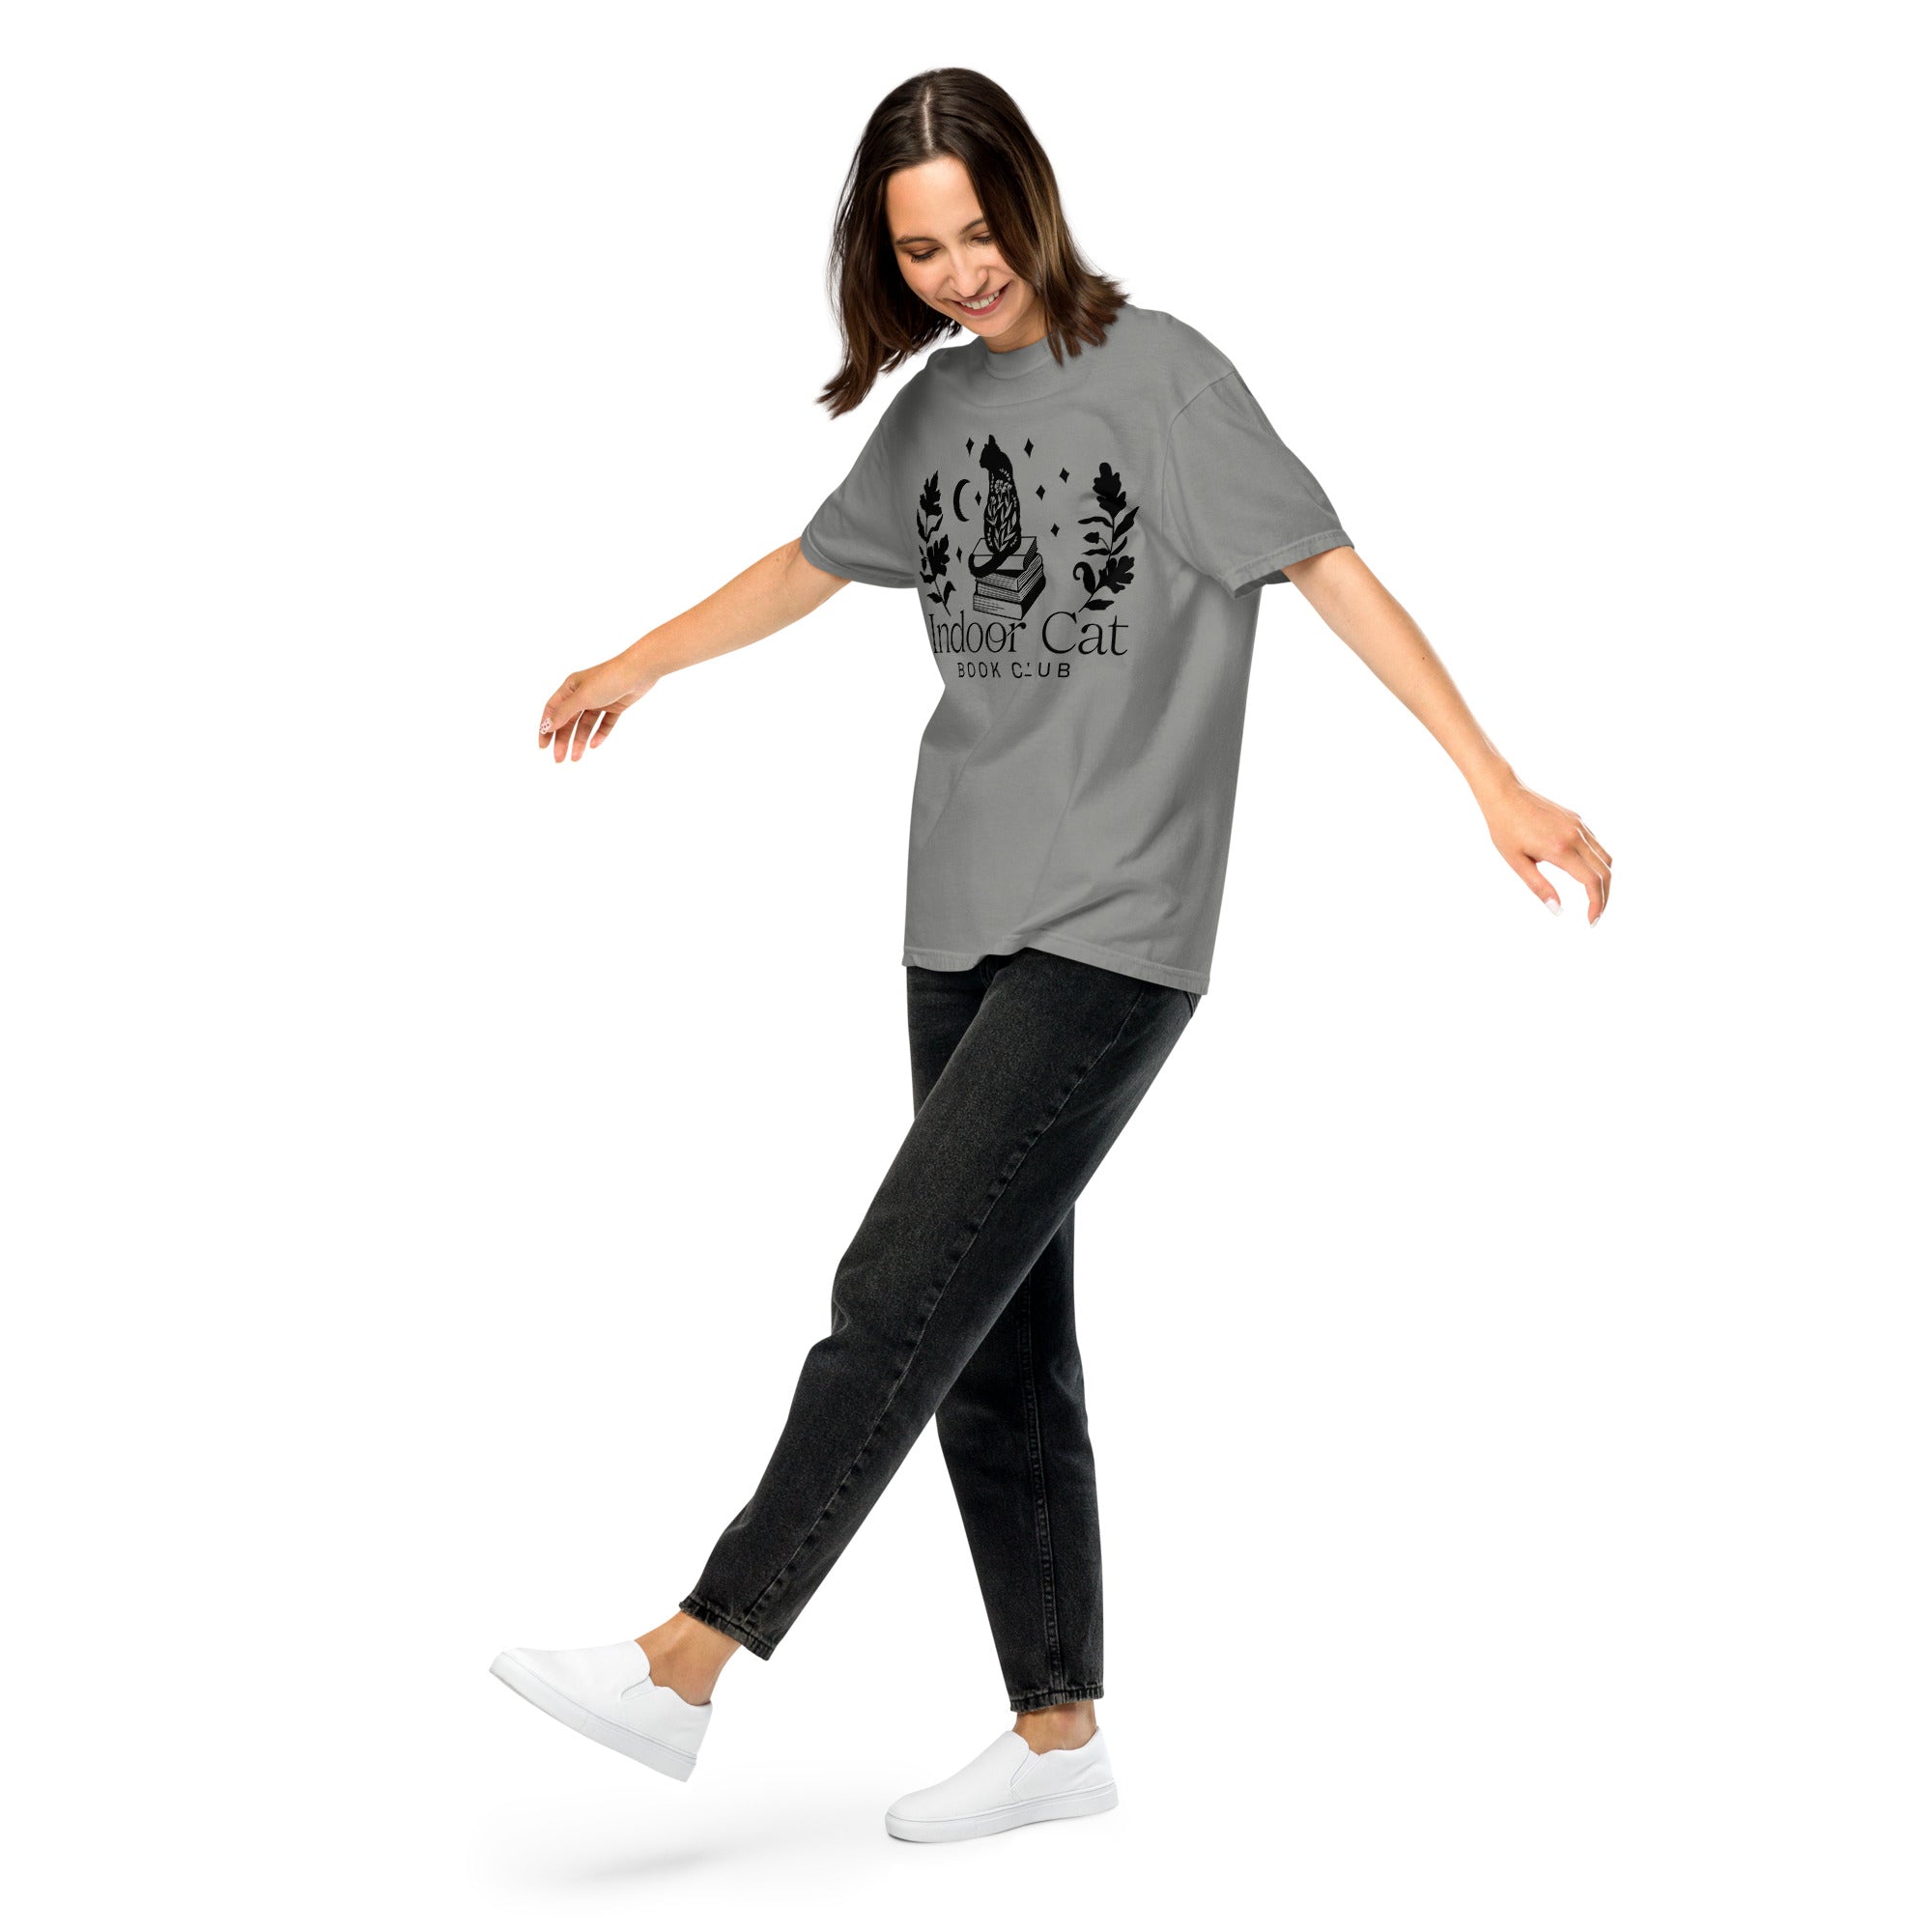 FireDrake Artistry™ Indoor Cat t-shirt, comfort colors brand in grey, black design